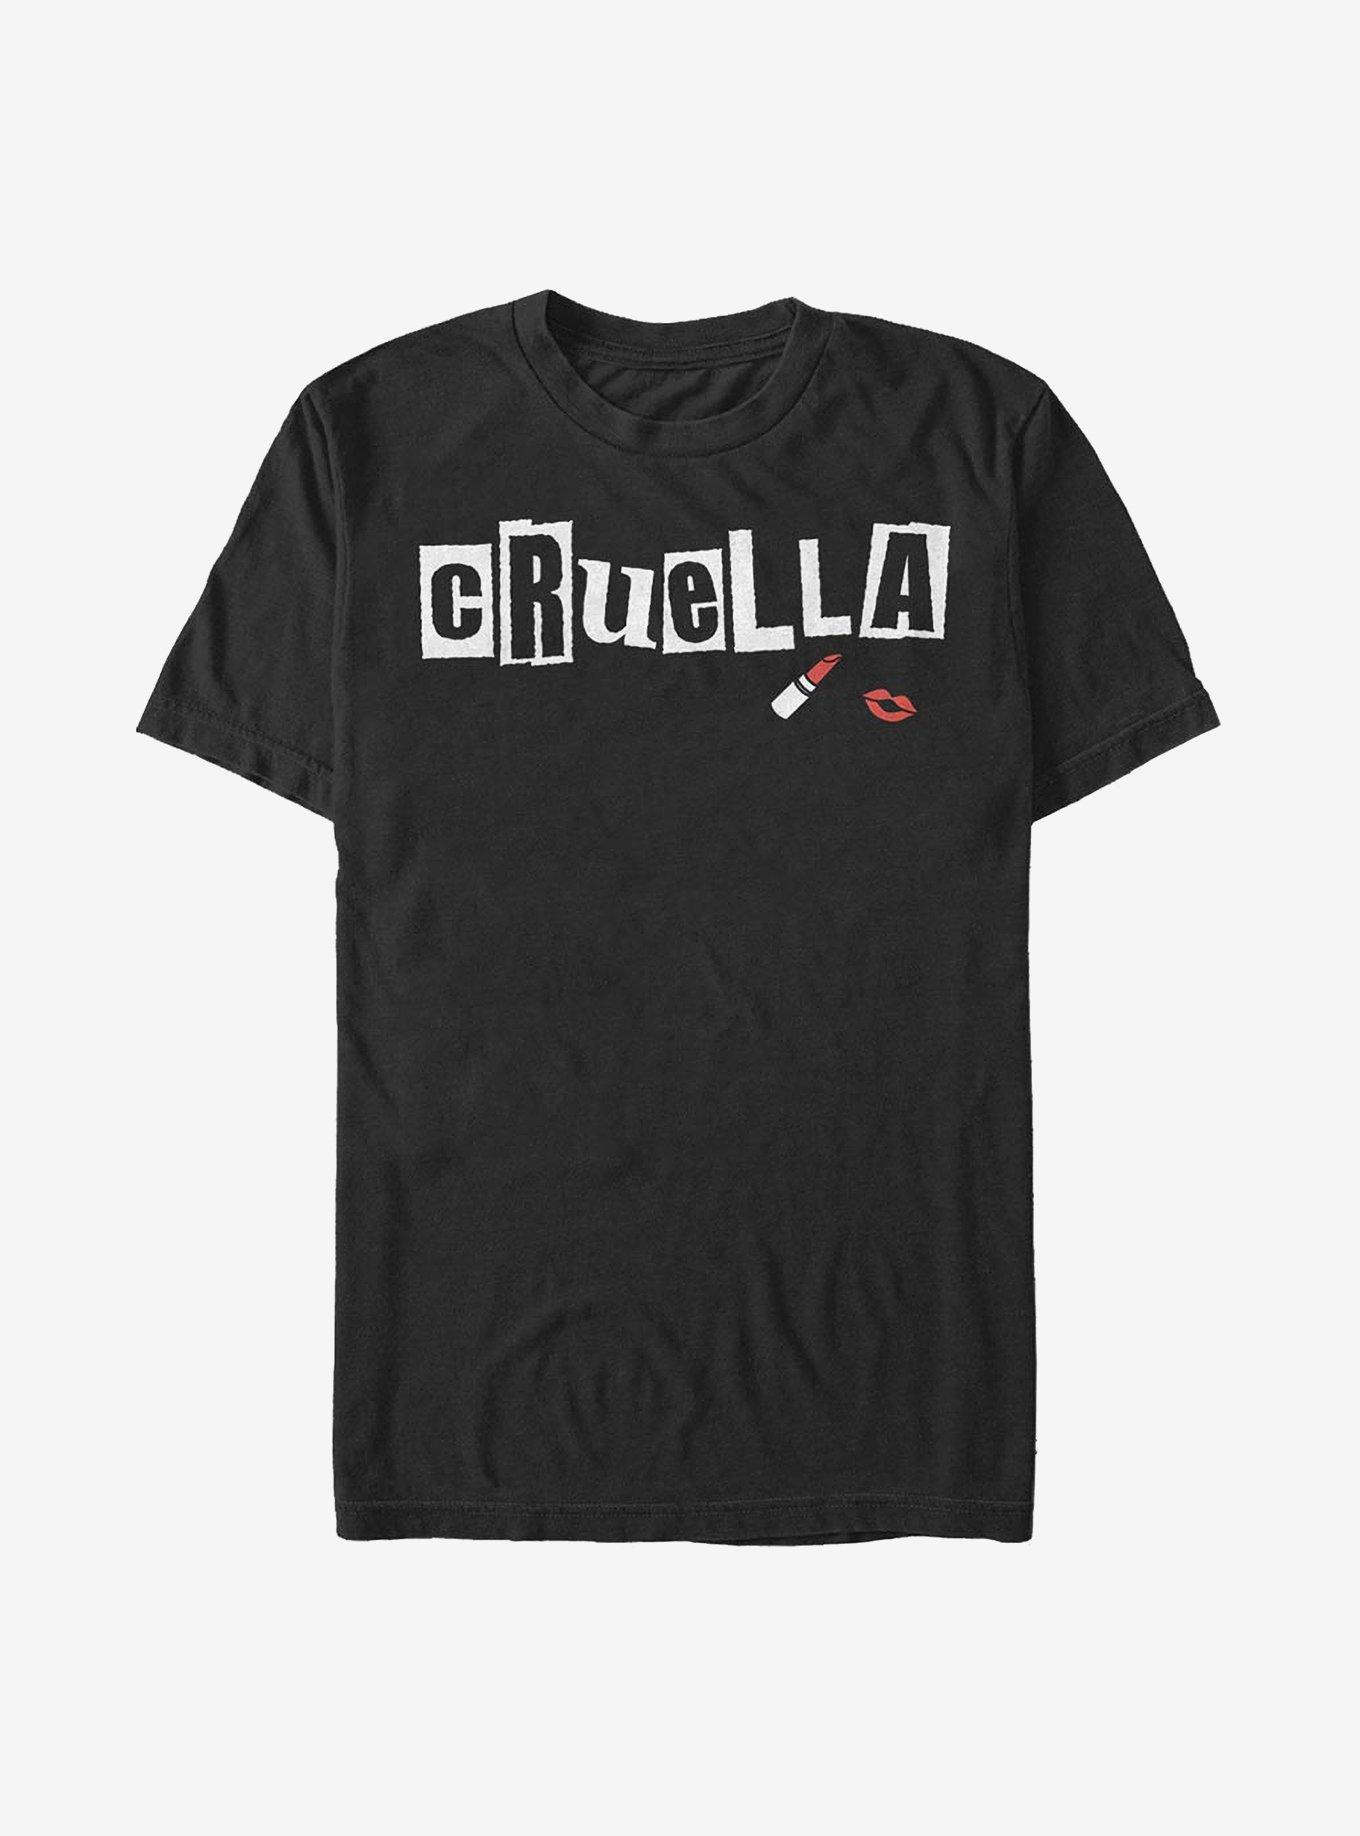 Disney Cruella Name Cut Out Letters T-Shirt, BLACK, hi-res